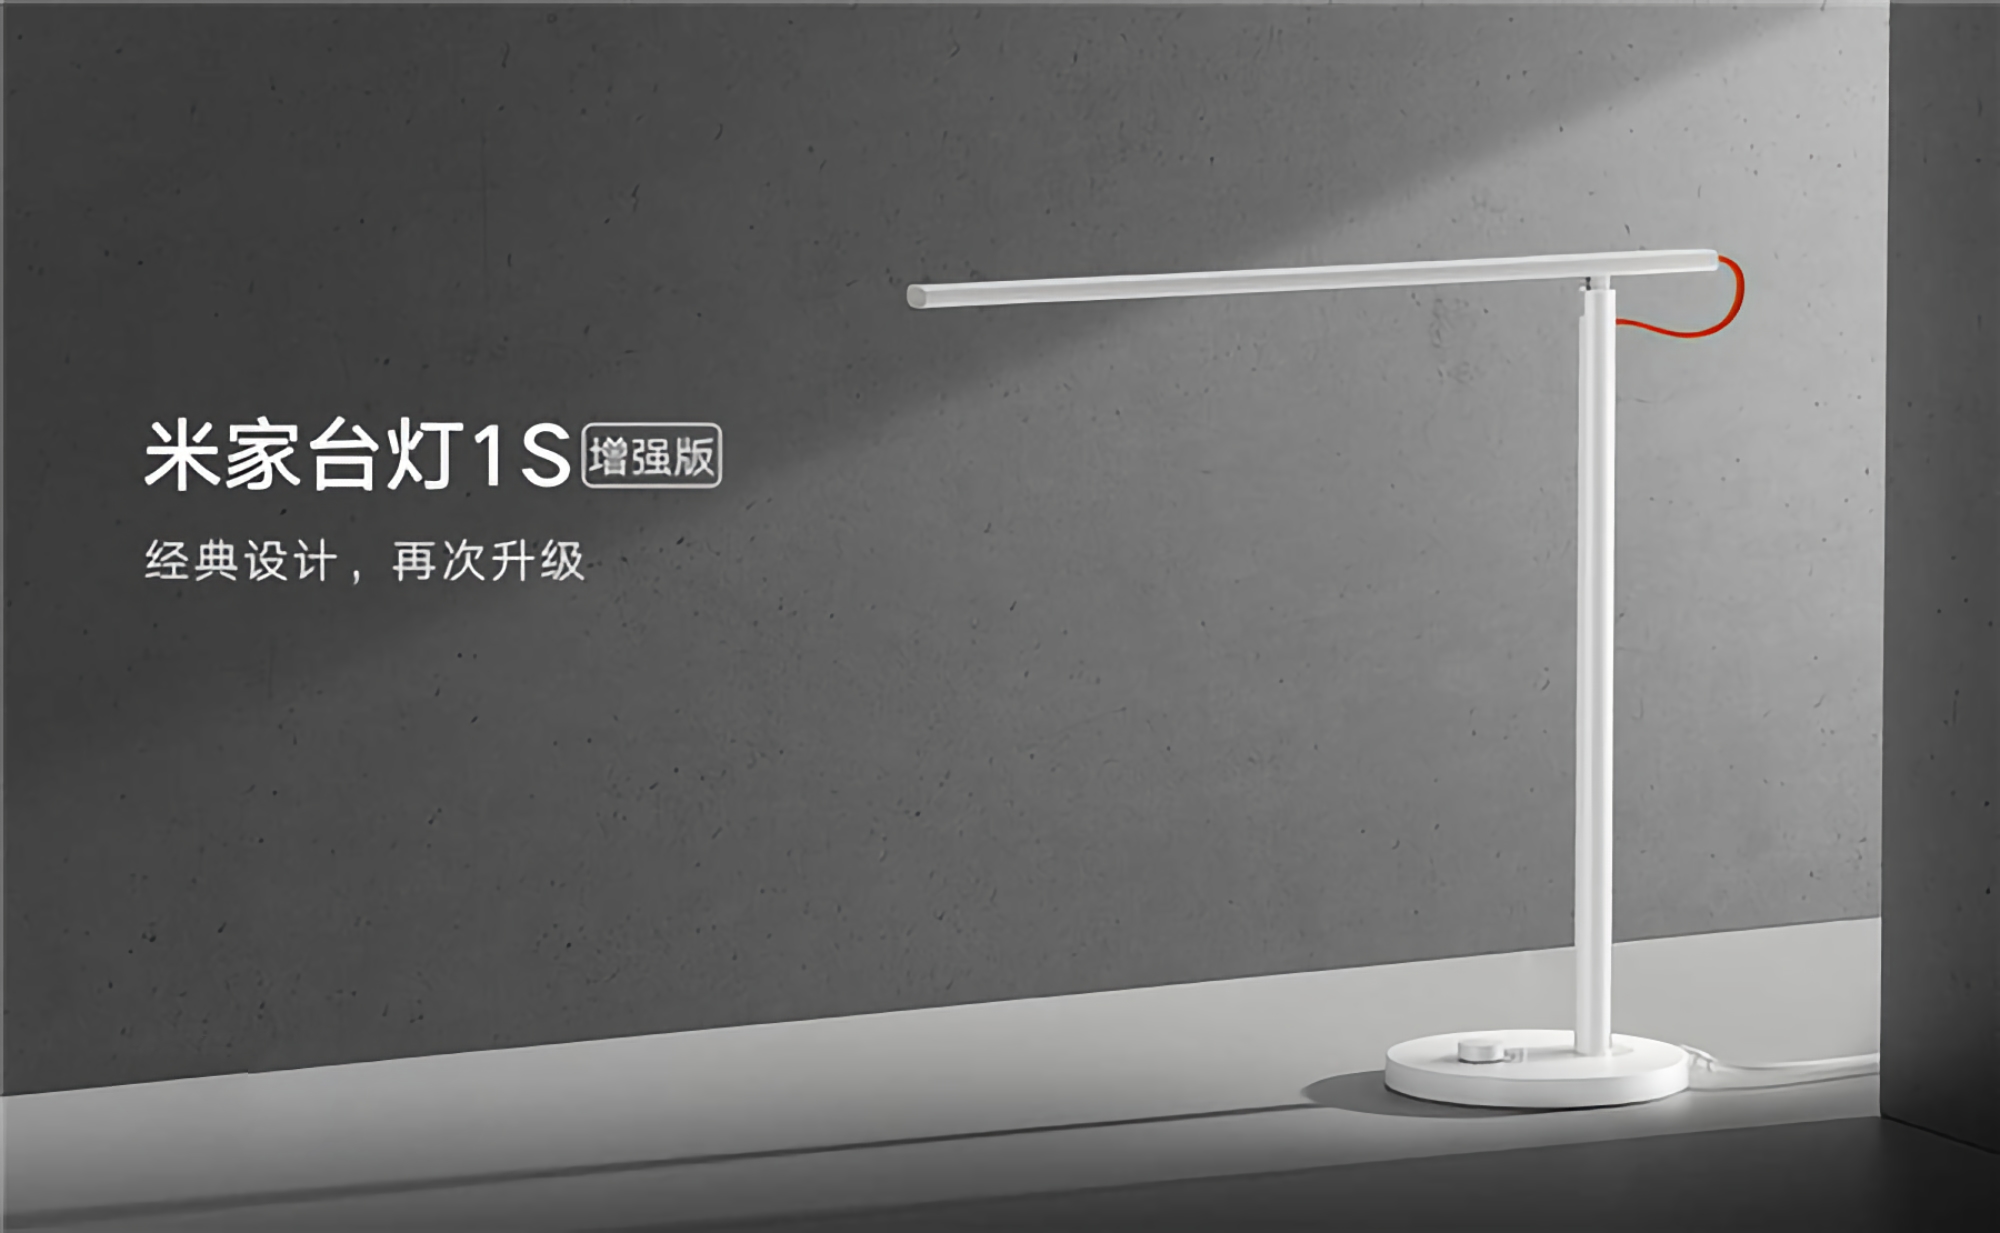 Xiaomi ha introdotto una lampada intelligente MiJia Desk Lamp 1S Potenziata con un nuovo modulo LED e un prezzo di $ 30